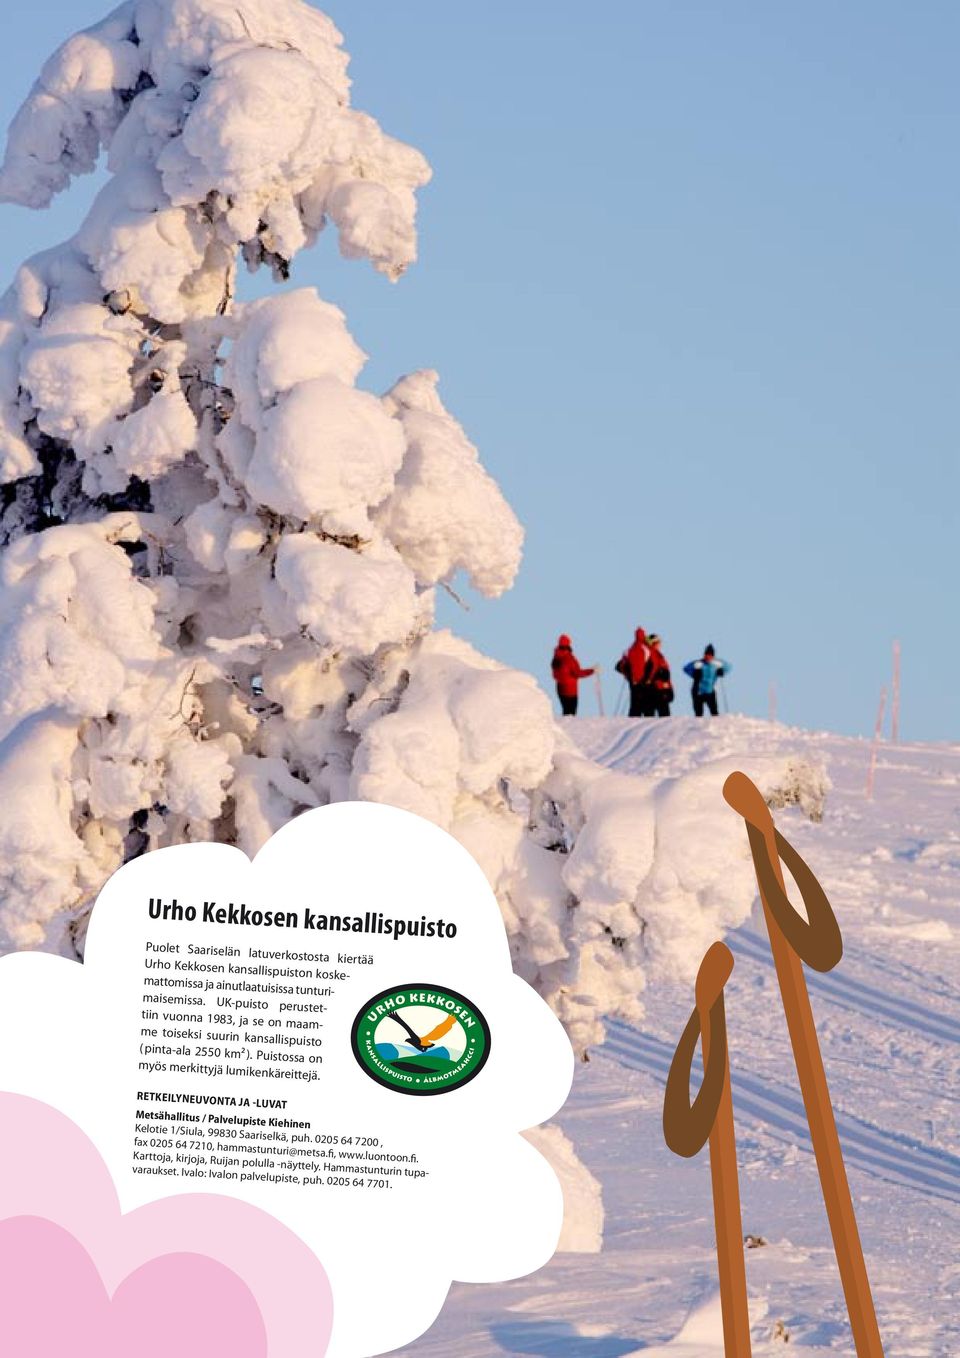 Puistossa on myös merkittyjä lumikenkäreittejä. RETKEILYNEUVONTA JA -LUVAT Metsähallitus / Palvelupiste Kiehinen Kelotie 1/Siula, 99830 Saariselkä, puh.